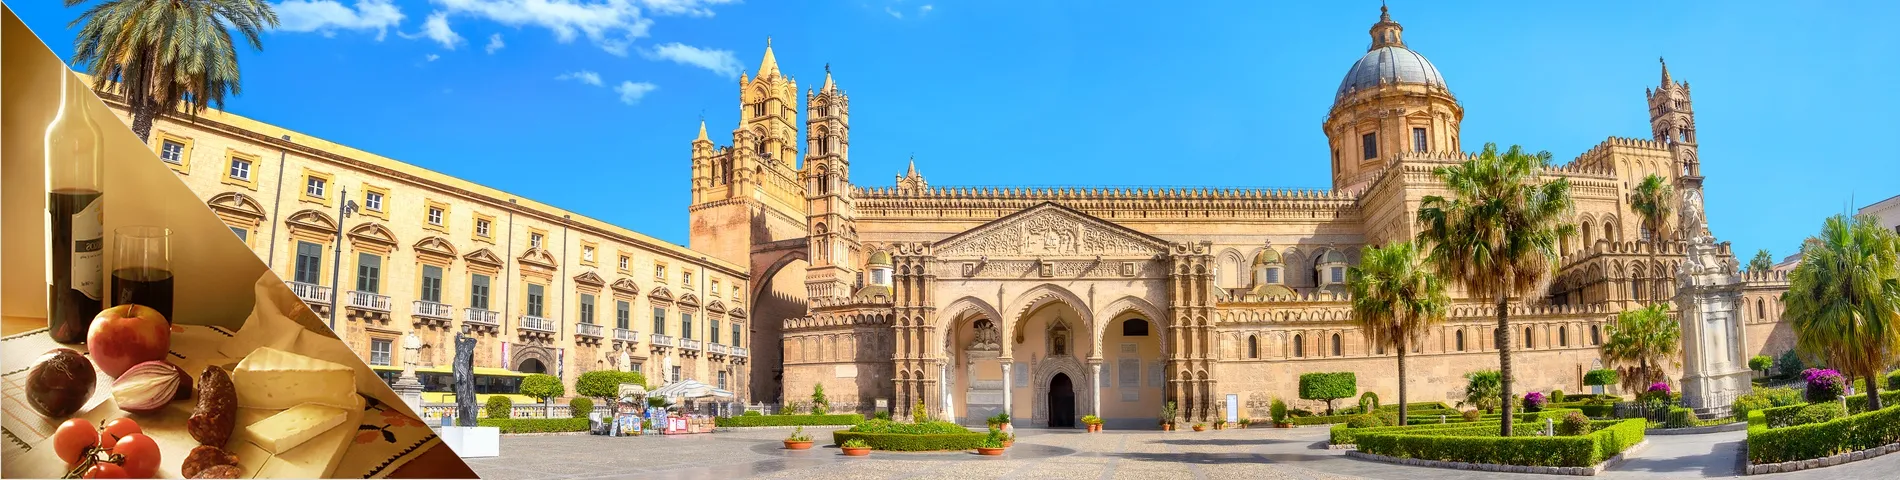 Palermo - Włoski & Kultura 